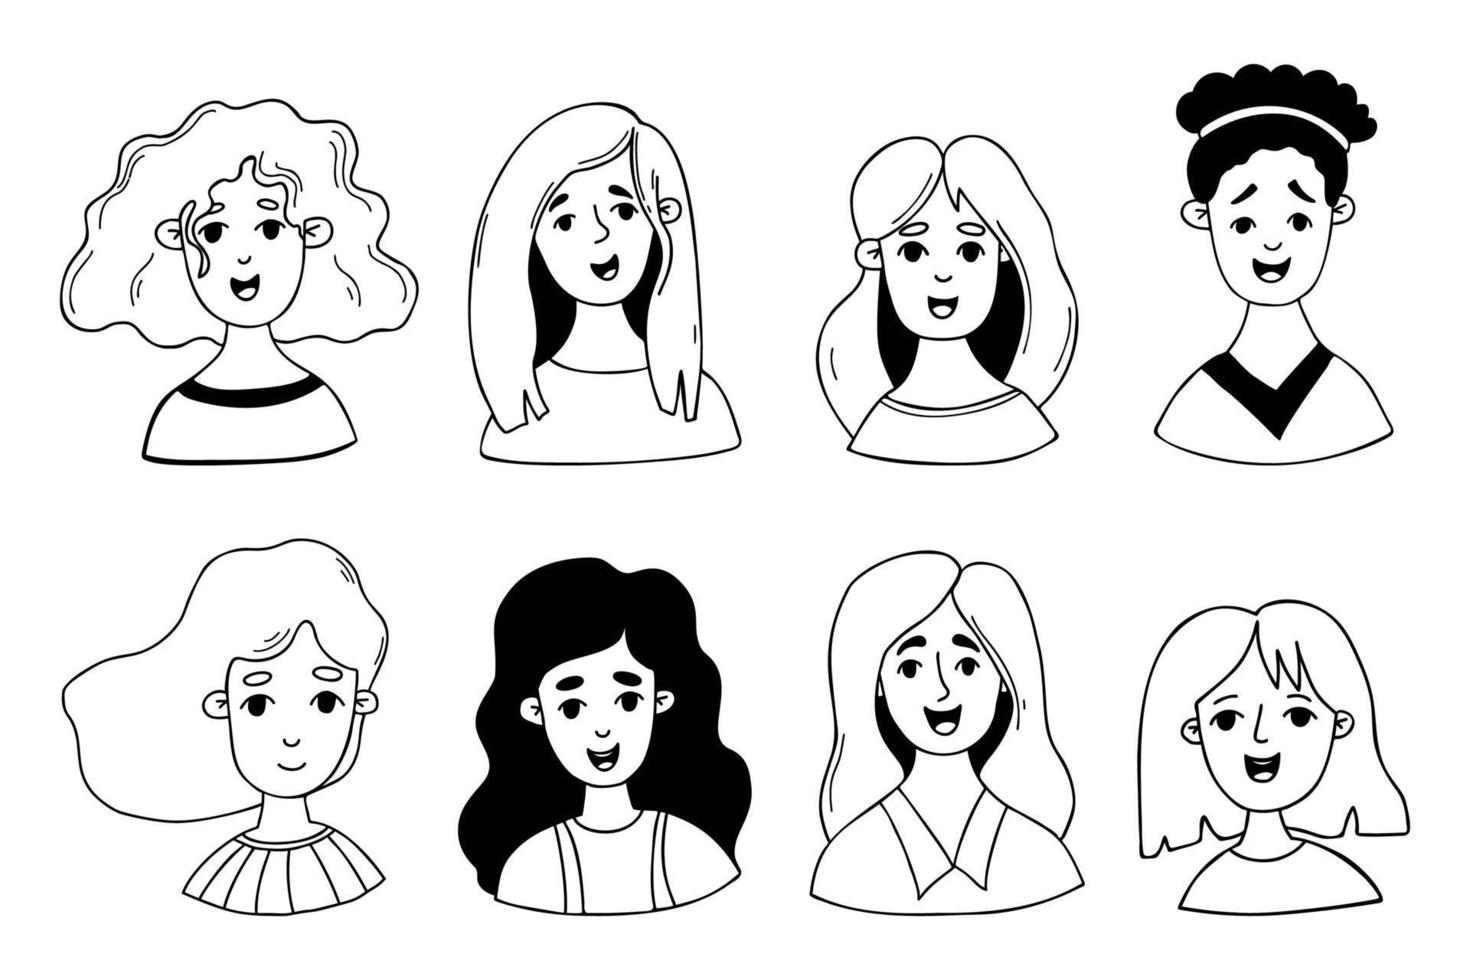 collezione carino femmina cartone animato facce. isolato vettore scarabocchio facce ritratti di donne e ragazze per uso come icone, avatar per sociale reti, design.